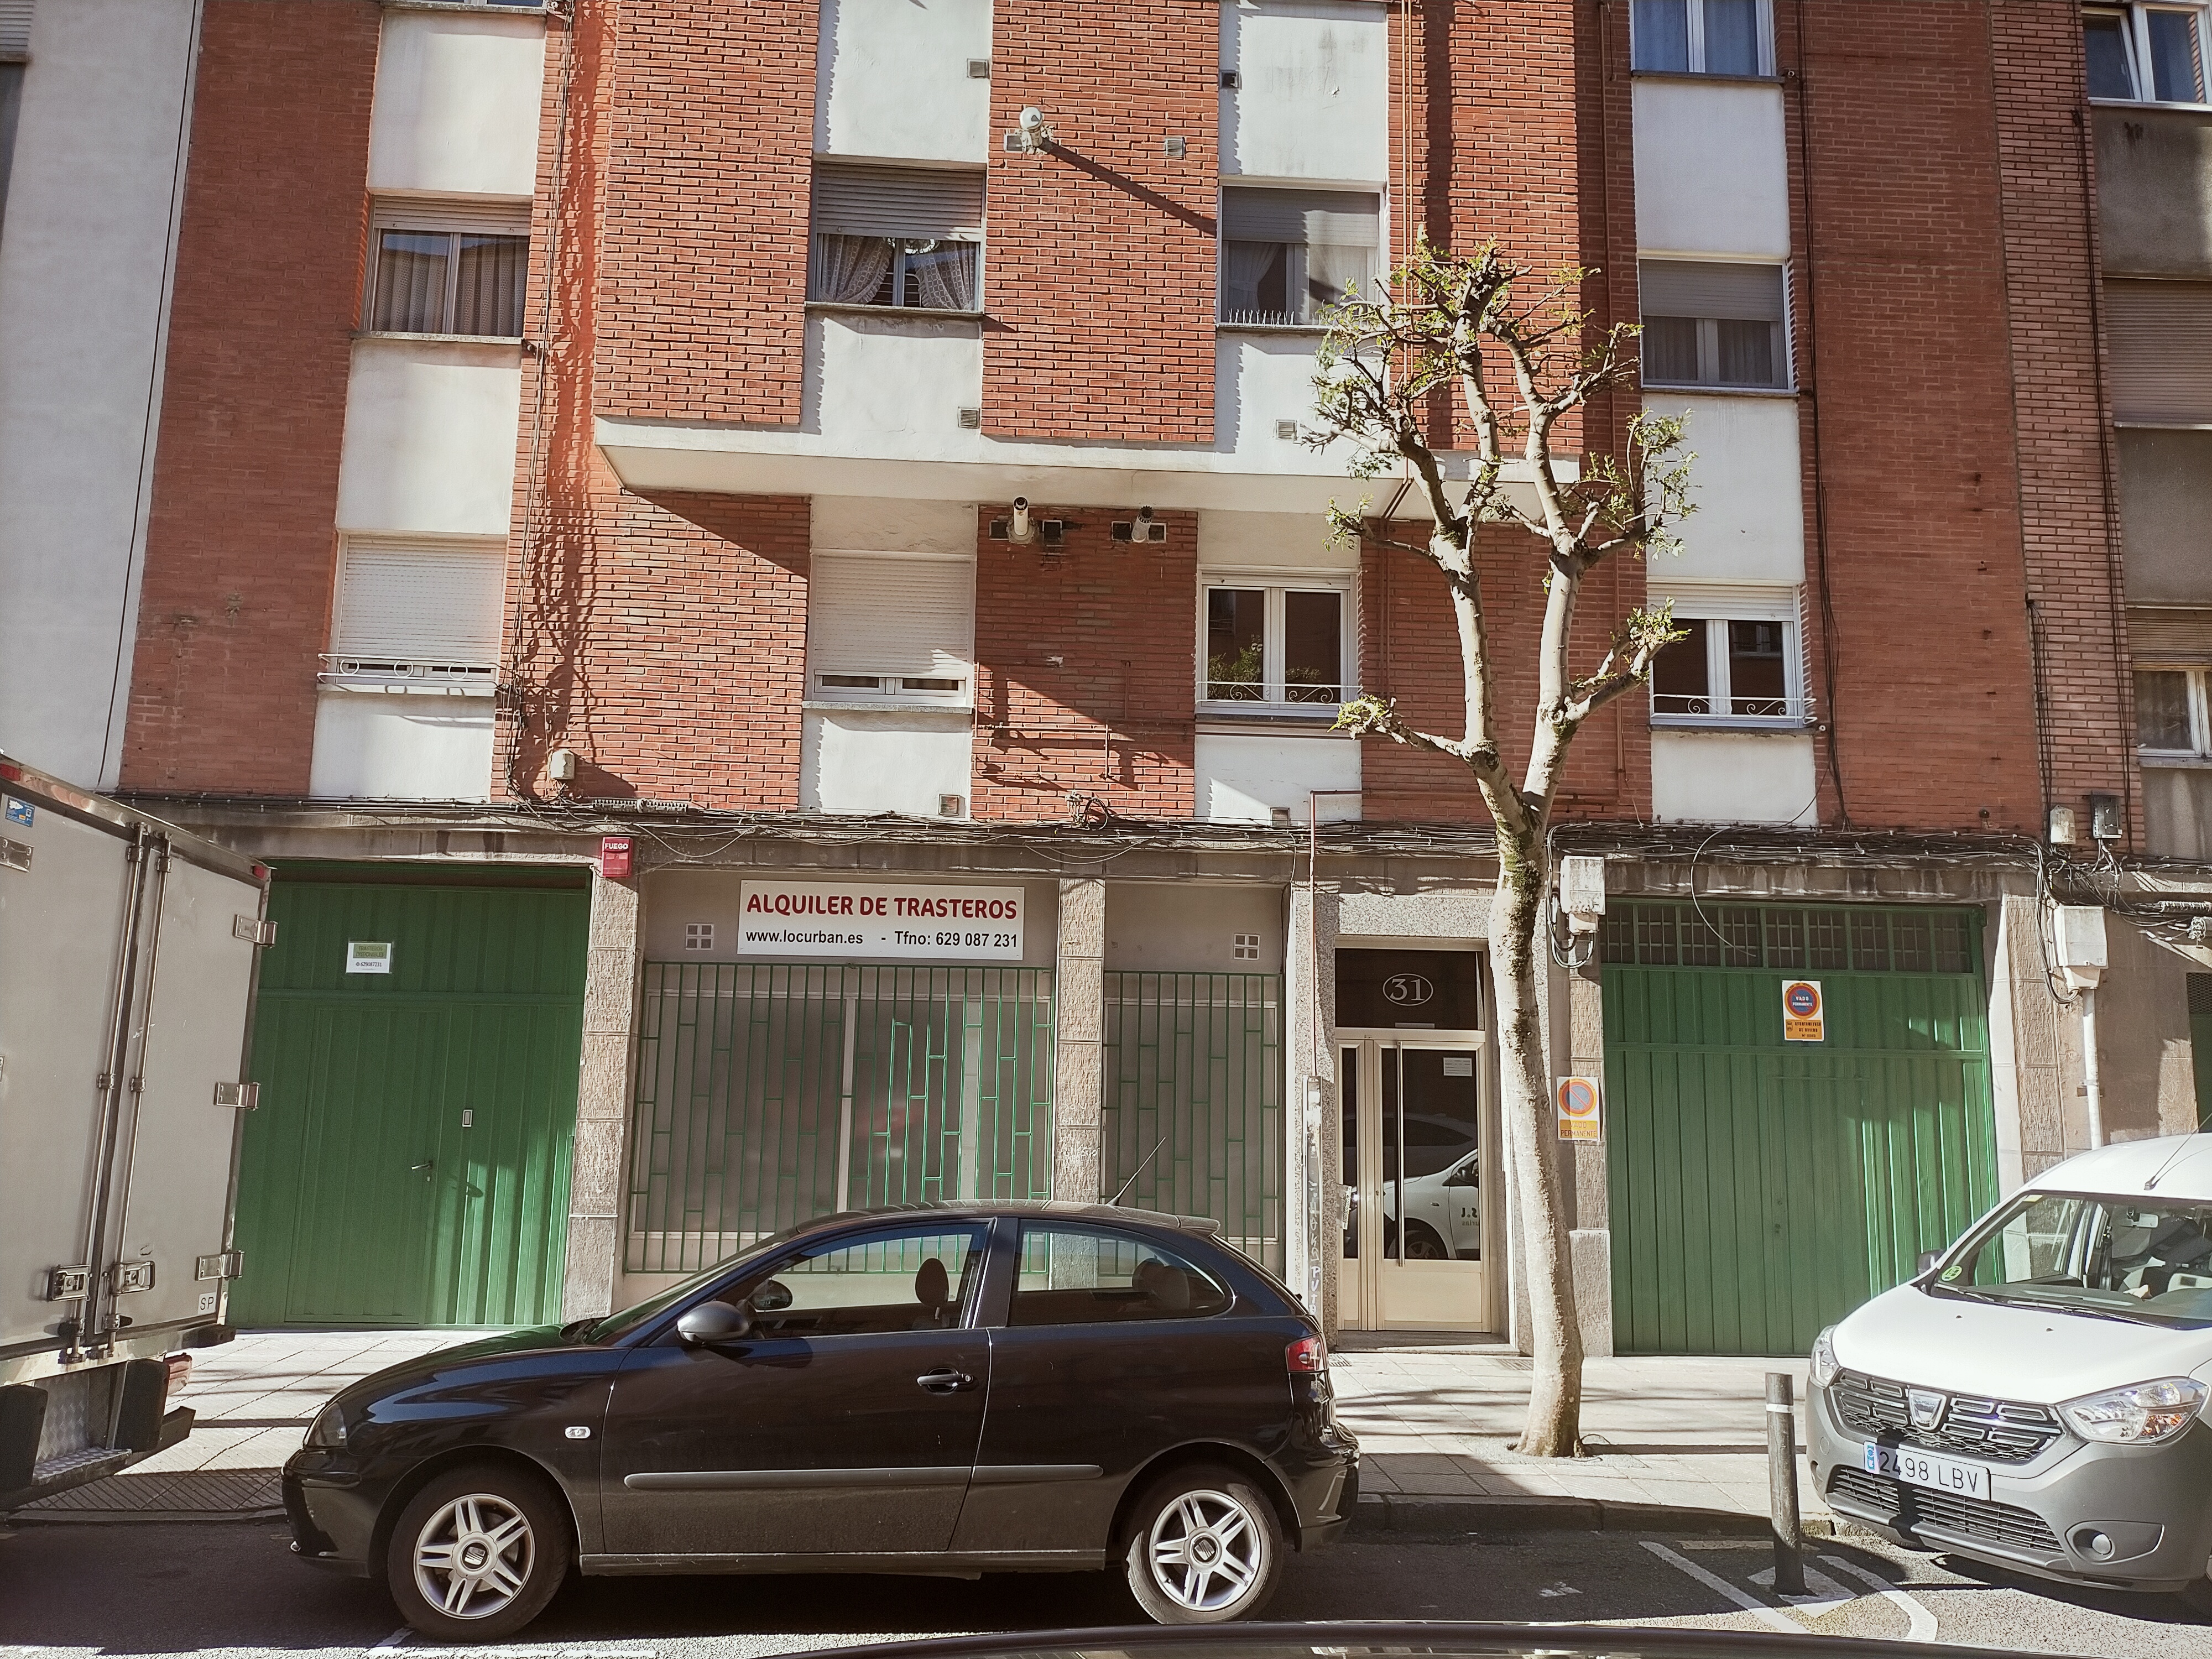 Alquiler de pisos, aticos, bajos comerciales, trasteros en oviedo Asturias